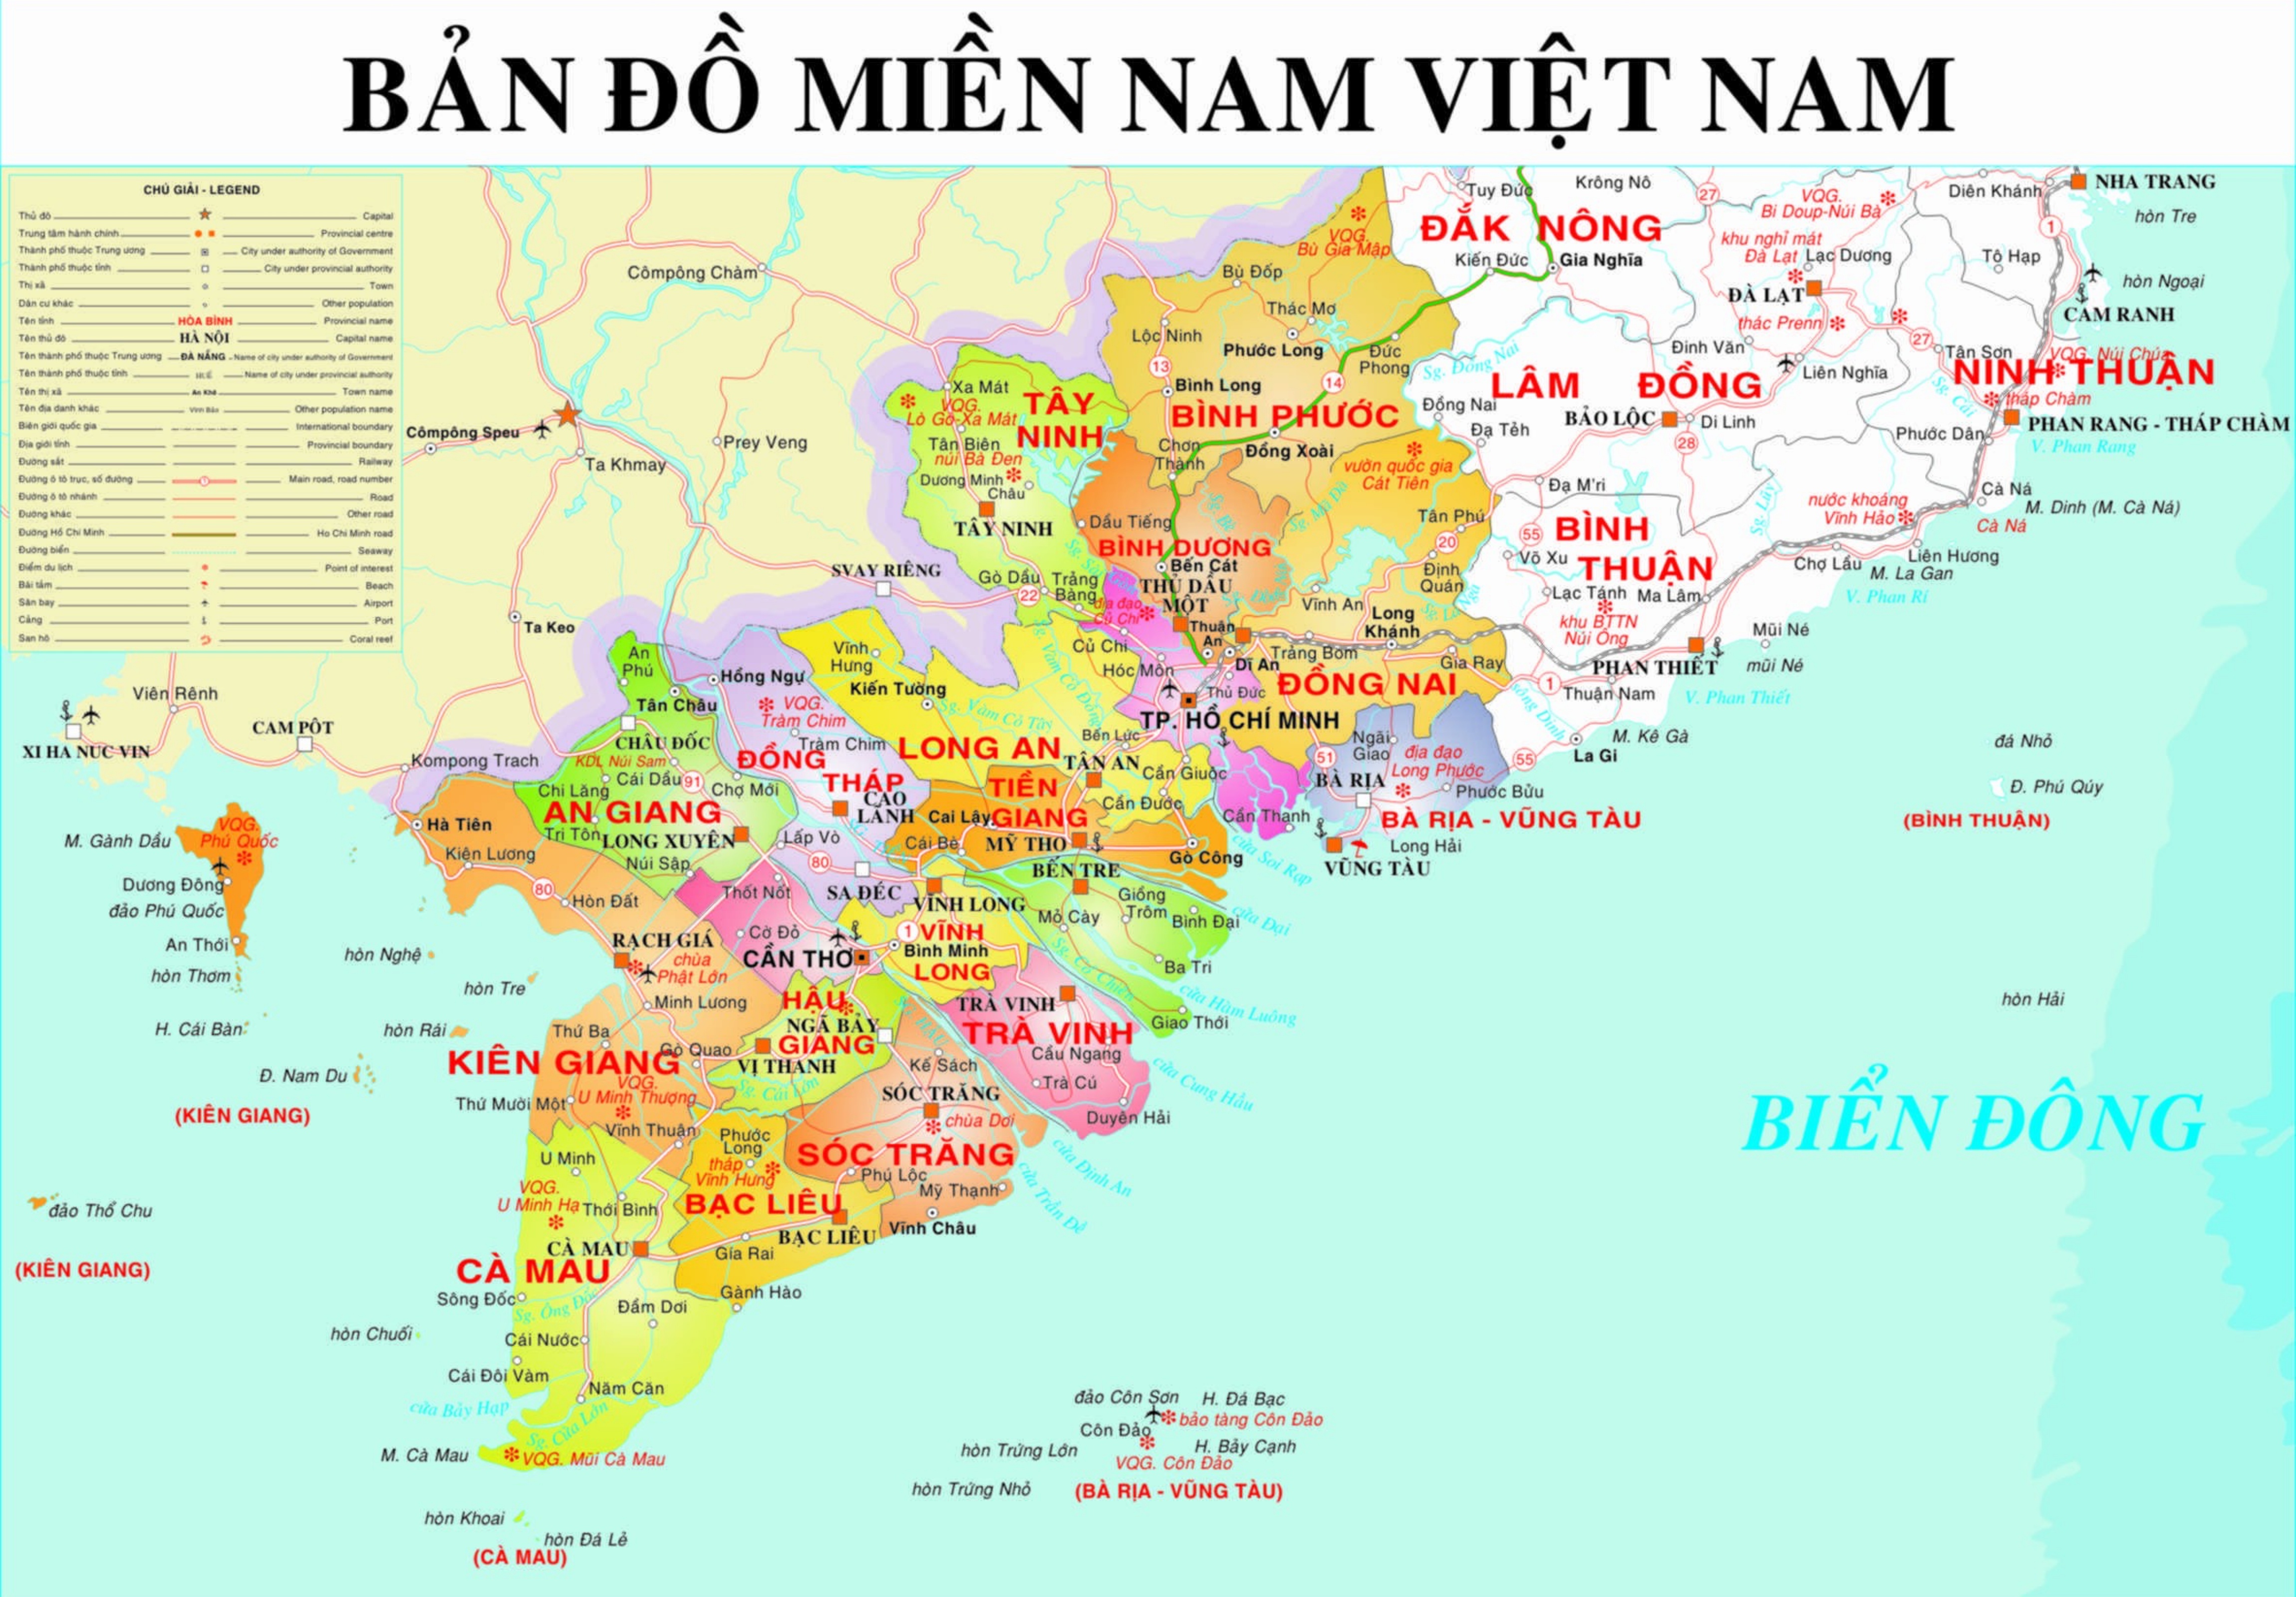 Biên tập bản đồ miền nam Việt Nam 2024 là công việc rất quan trọng trong việc nâng cao chất lượng của thế giới du lịch Việt Nam. Nếu bạn muốn được tham gia công tác này, hãy liên hệ với chúng tôi để biết thêm thông tin.